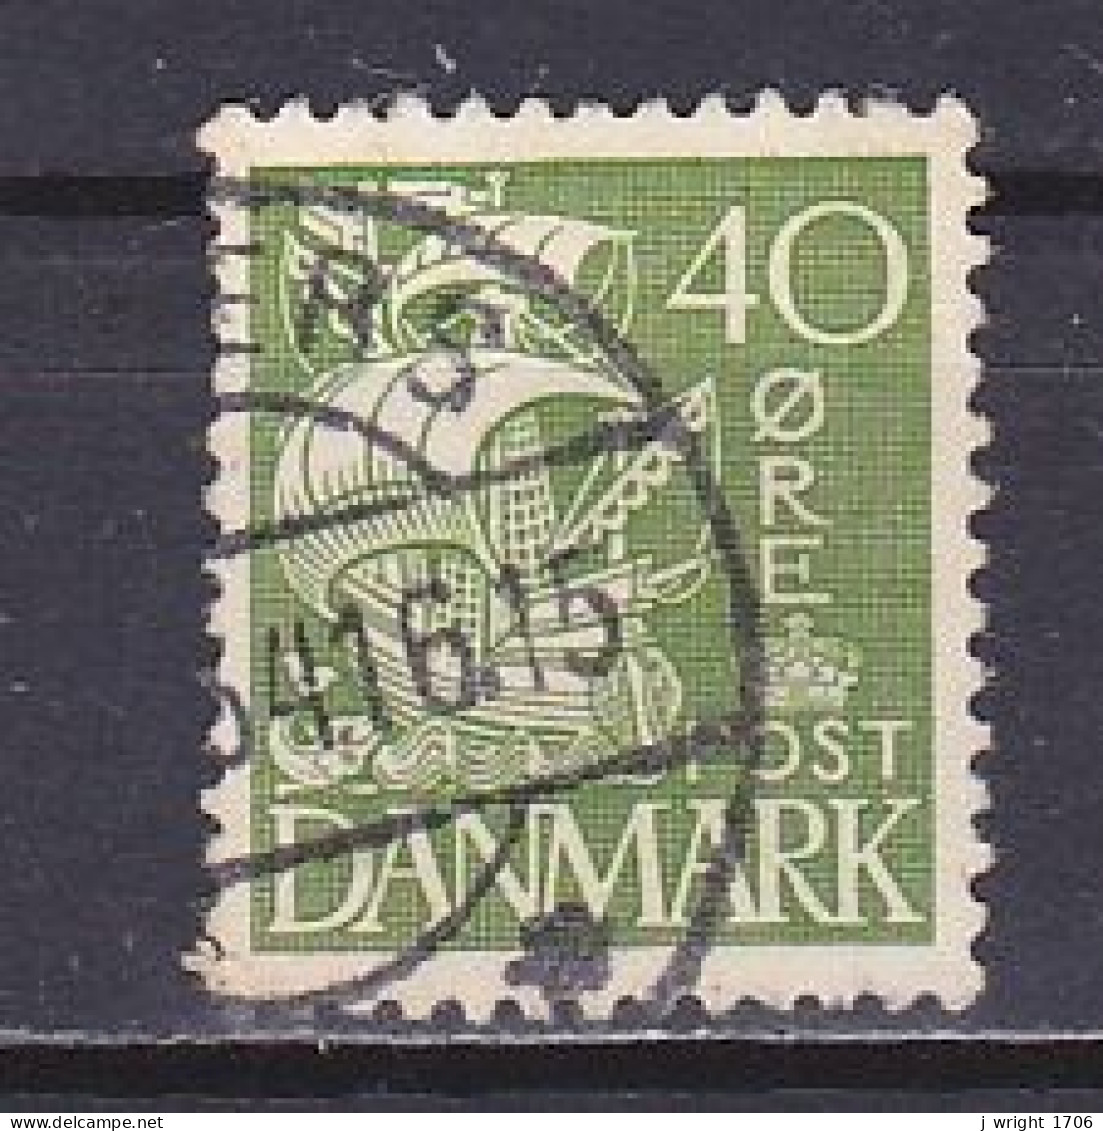 Denmark, 1933, Caraval/Hatched Background, 40ø, USED - Oblitérés